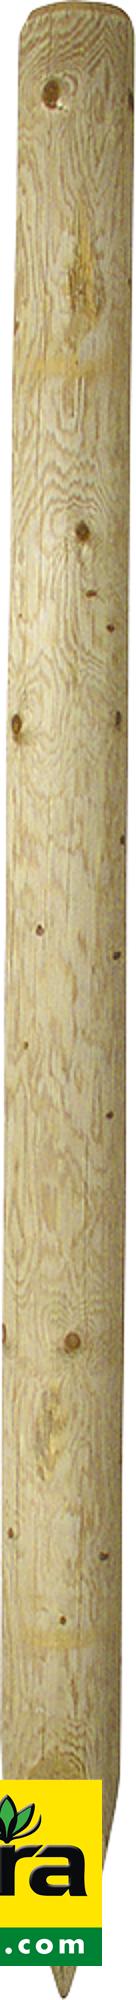 Holzpfosten, 2,50 m, imprägniert, gespitzt, d= 10 cm